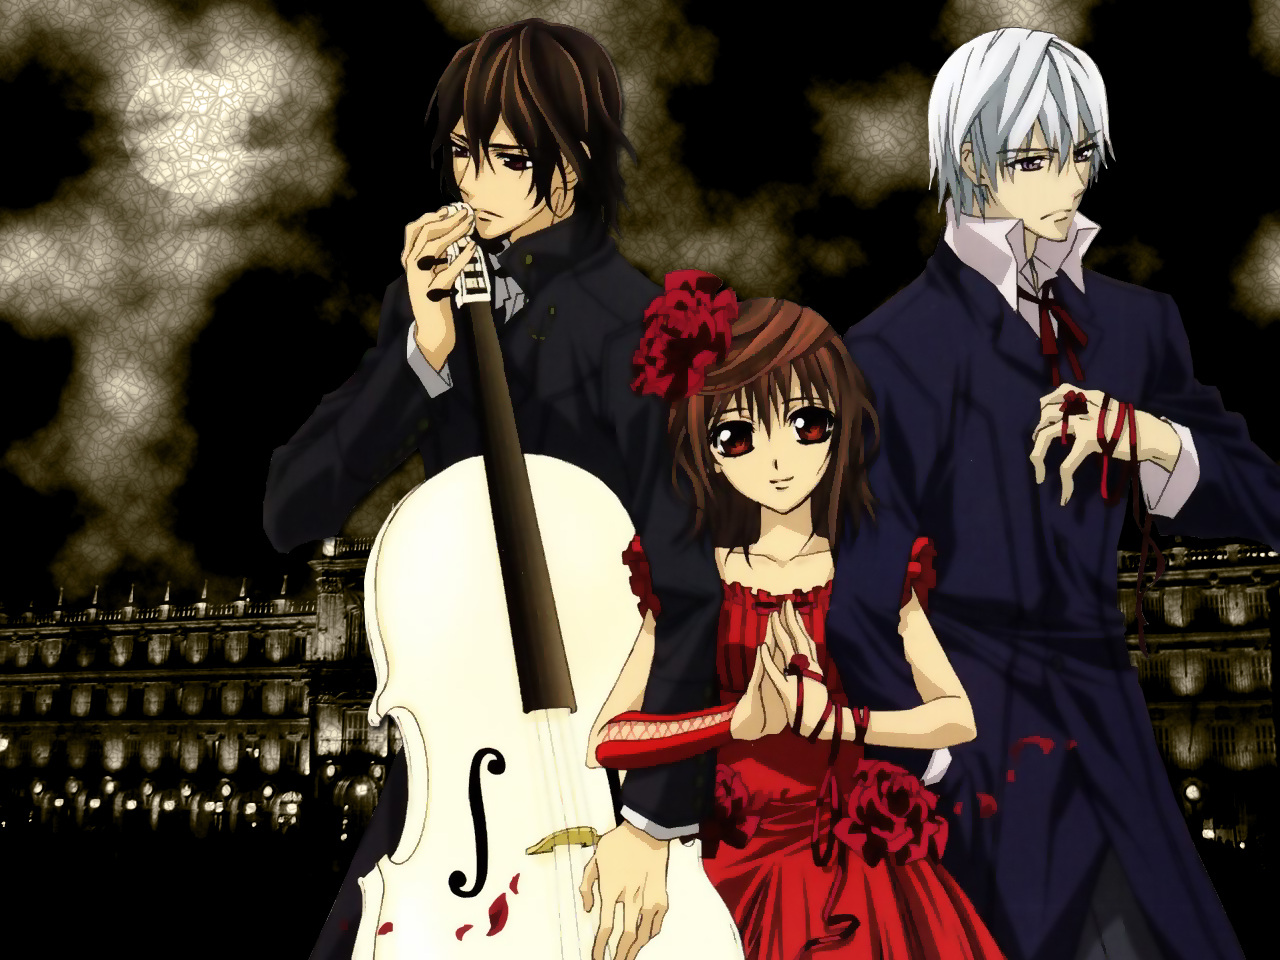 vampire knight wallpaper,string instrument,anime,bowed string instrument,string instrument,musical instrument